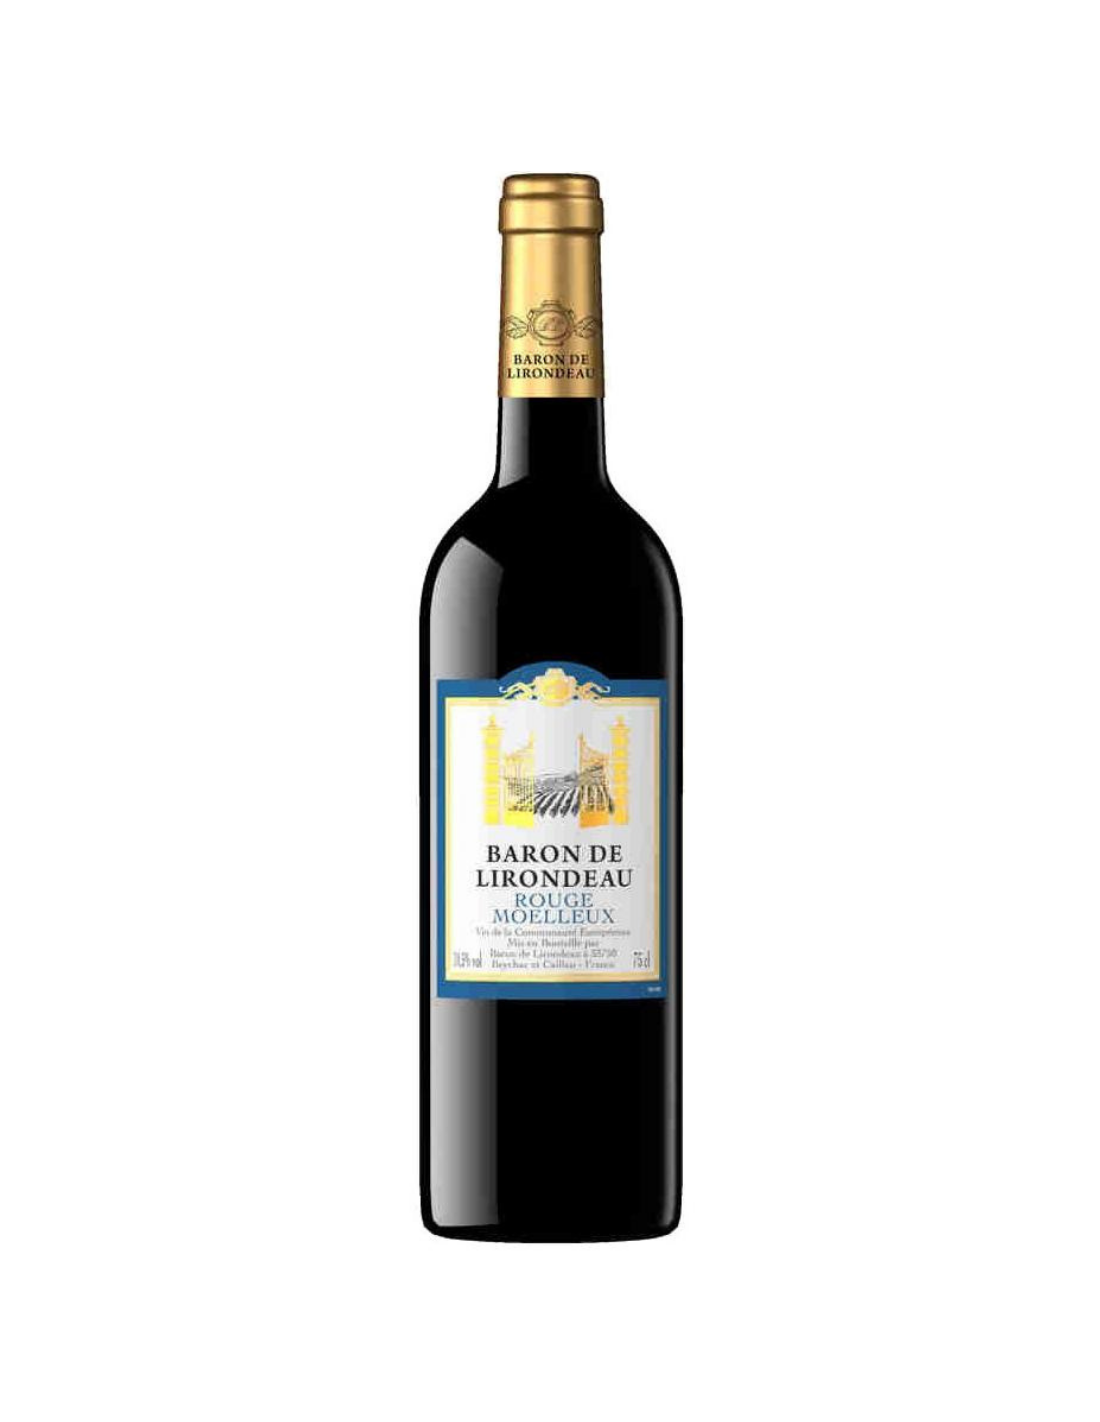 Vin rosu dulce Baron de Lirondeau Rouge Moelleux, 10.5% alc., 0.75L, Franta alcooldiscount.ro